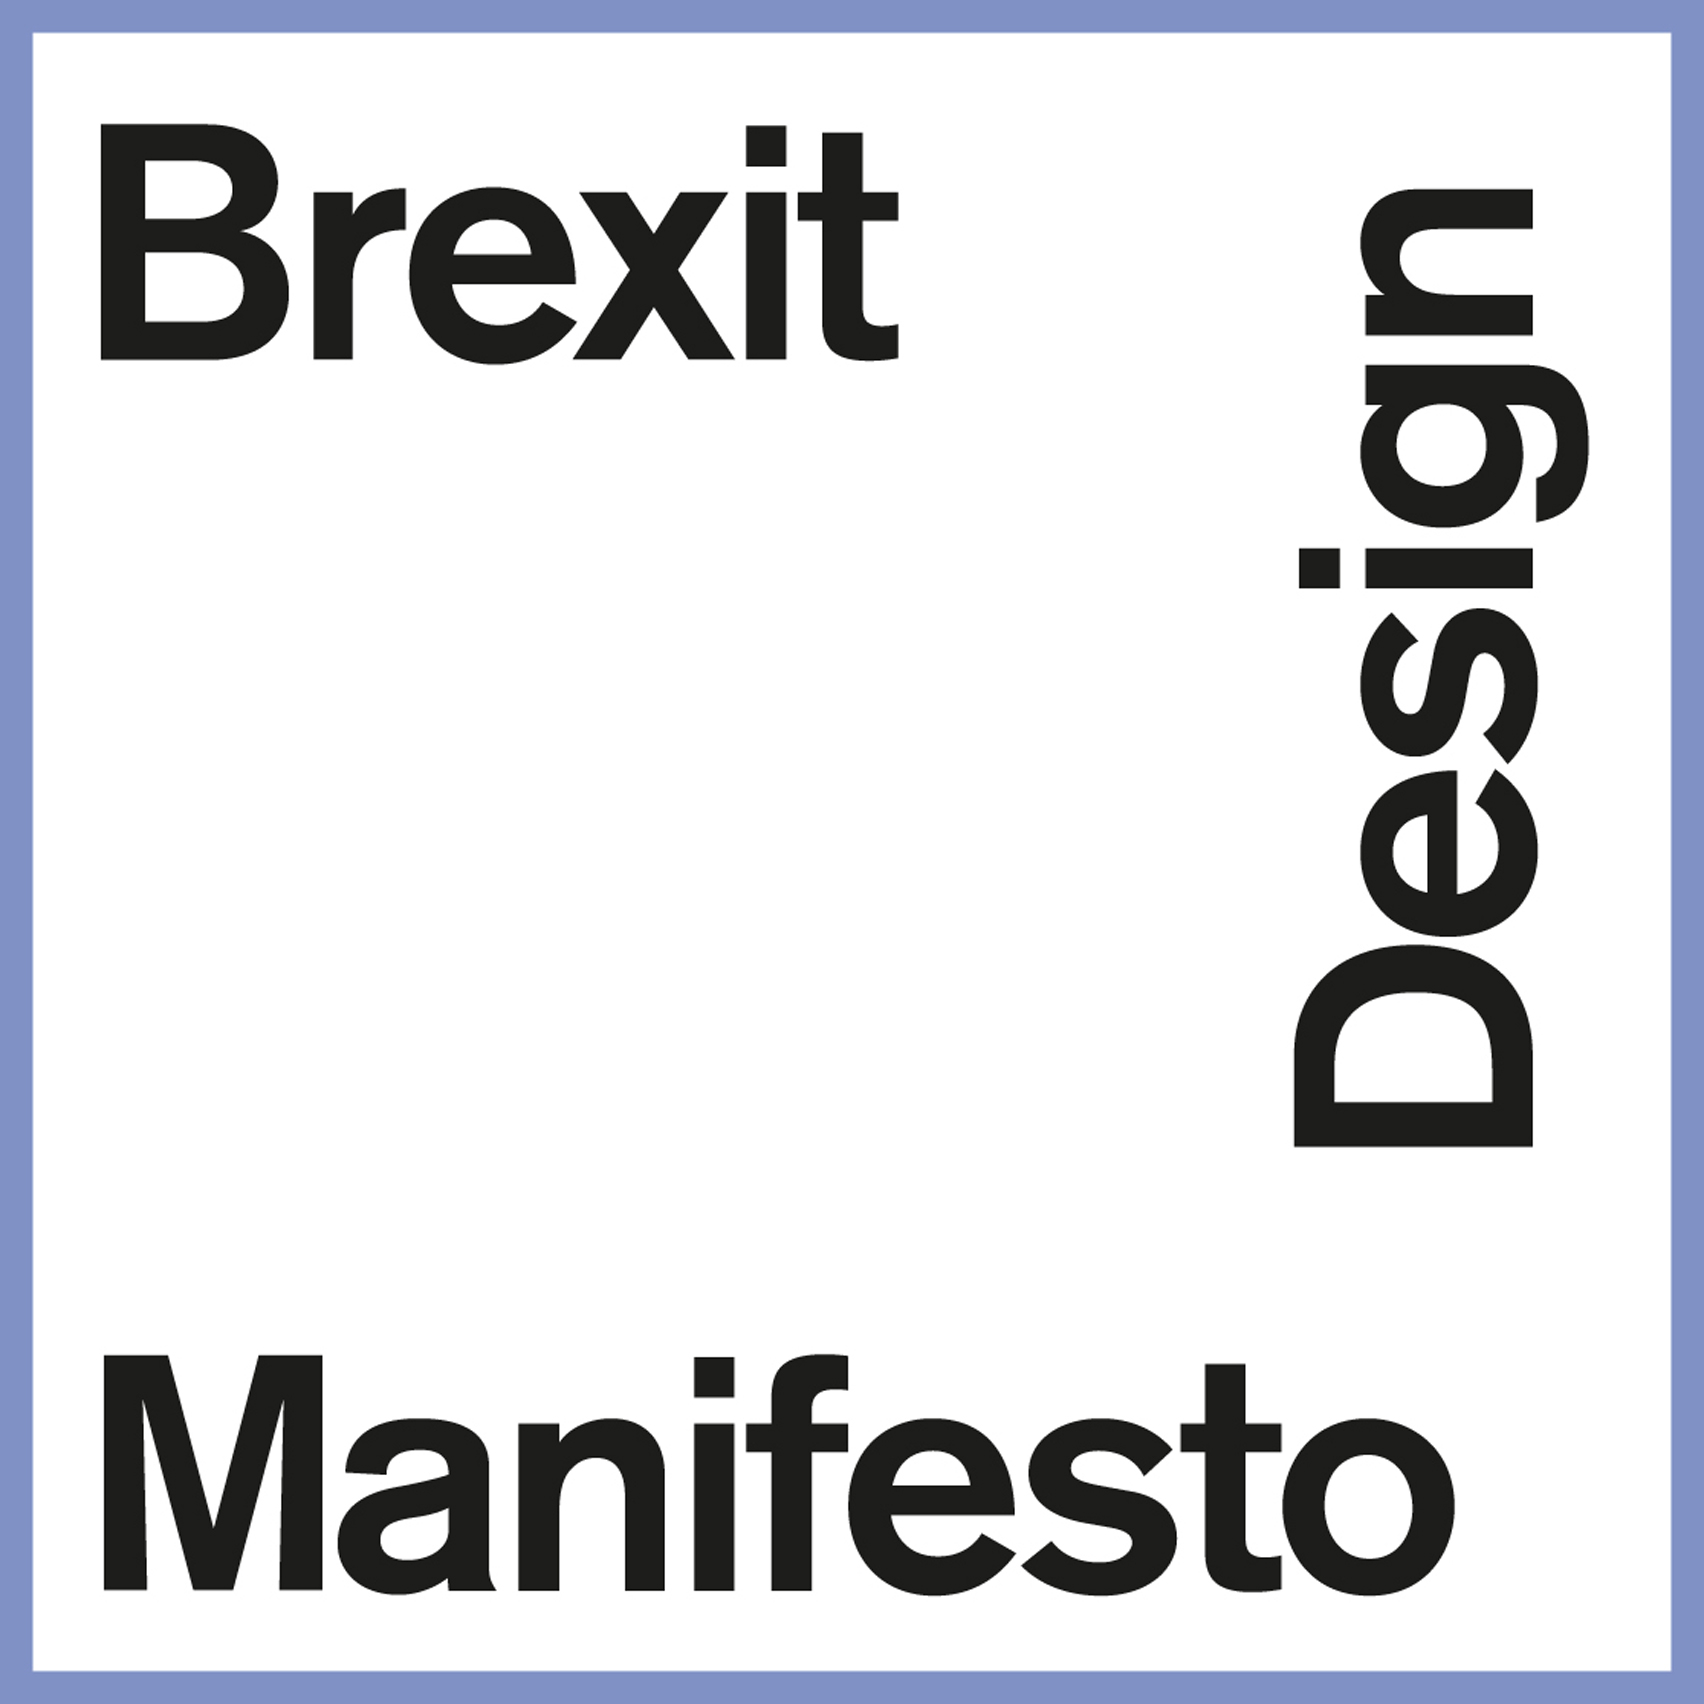 Brexit design manifesto signatures